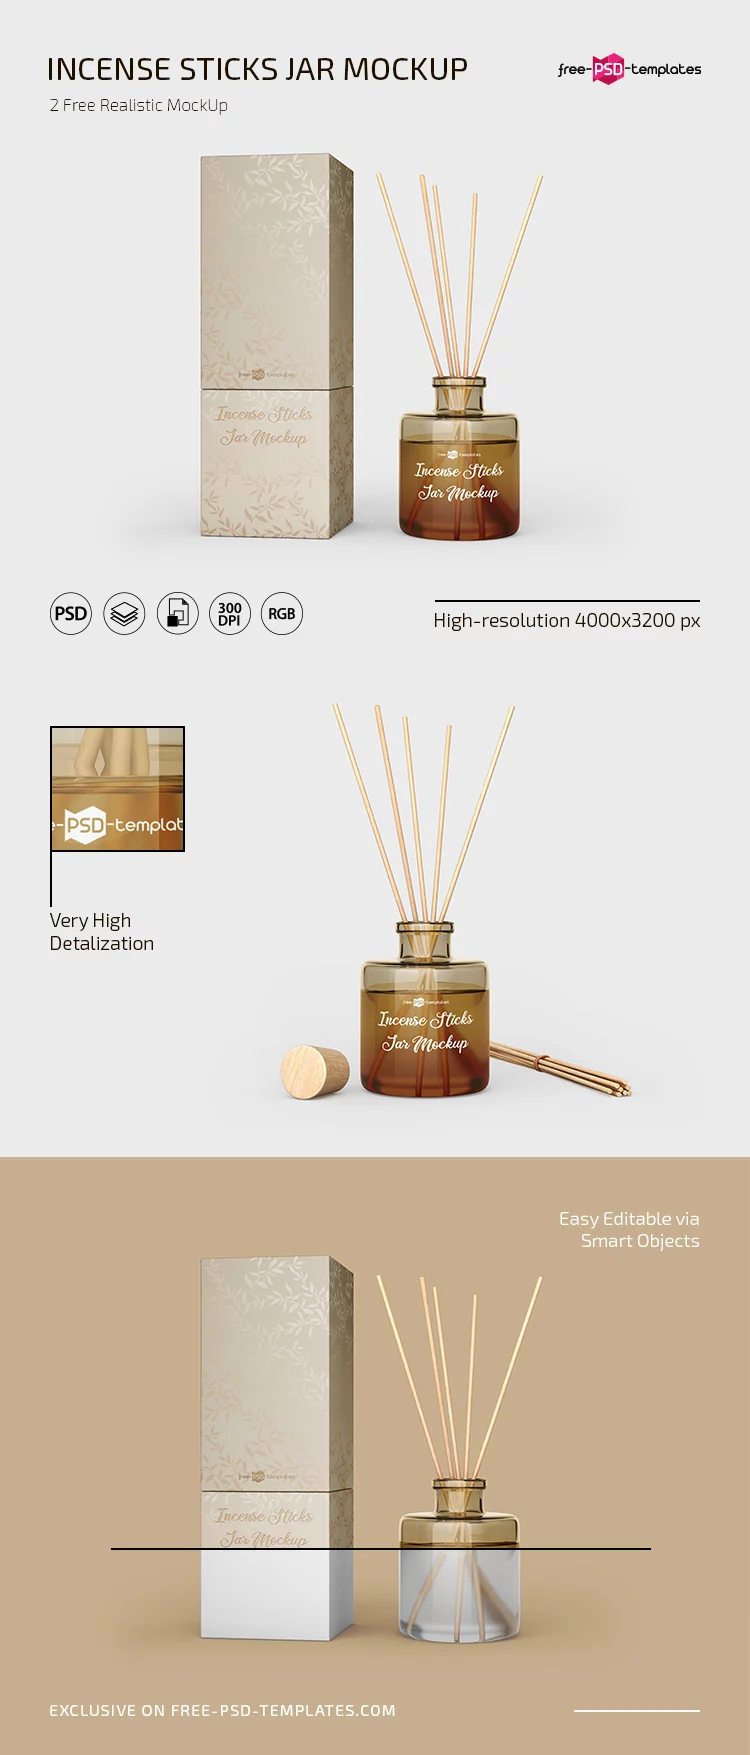 Free Incense Sticks Jar Mockup in PSD